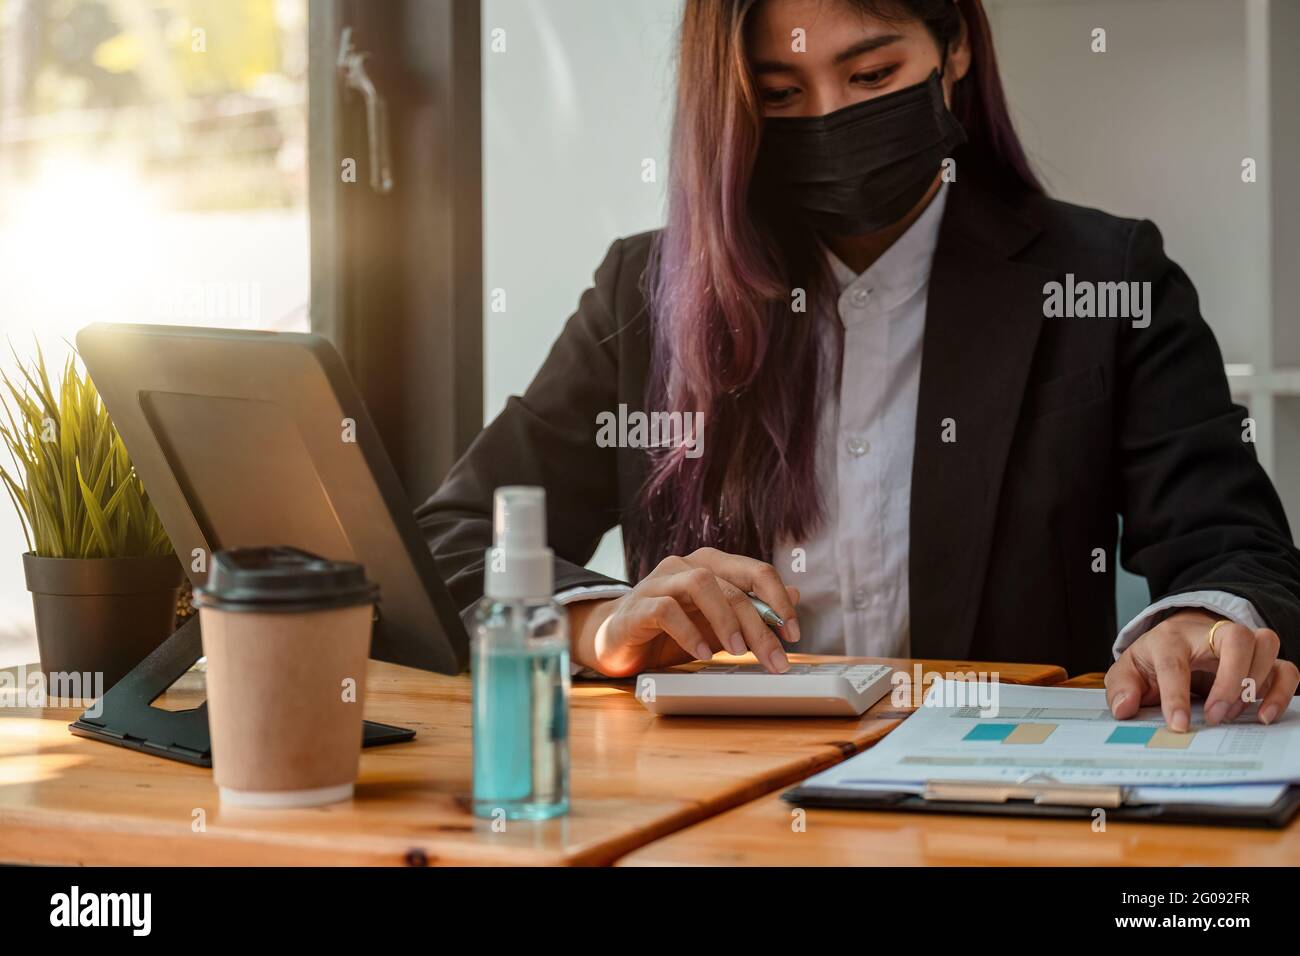 Aufnahme einer asiatischen Geschäftsfrau, die Gesichtsmaske trägt, während sie im Büro an einem Computer arbeitet. Stockfoto